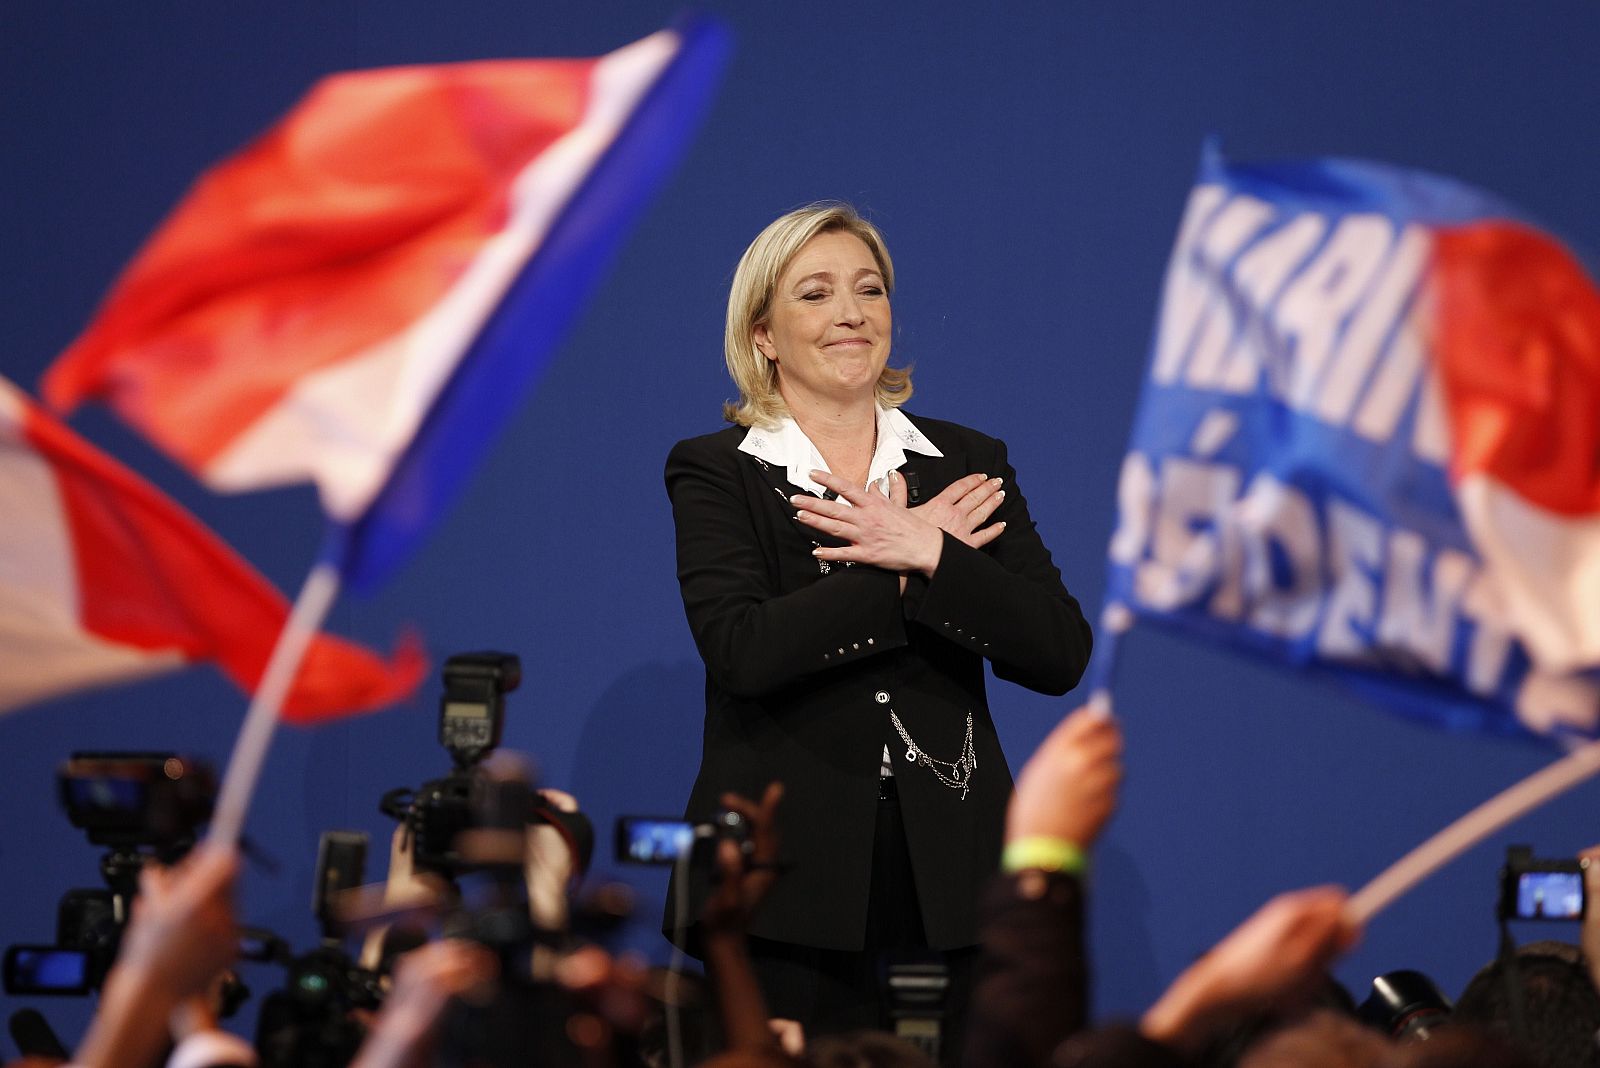 La líder del Frente Nacional (FN), Marine Le Pen, bate récords en la primera ronda de las elecciones francesas.